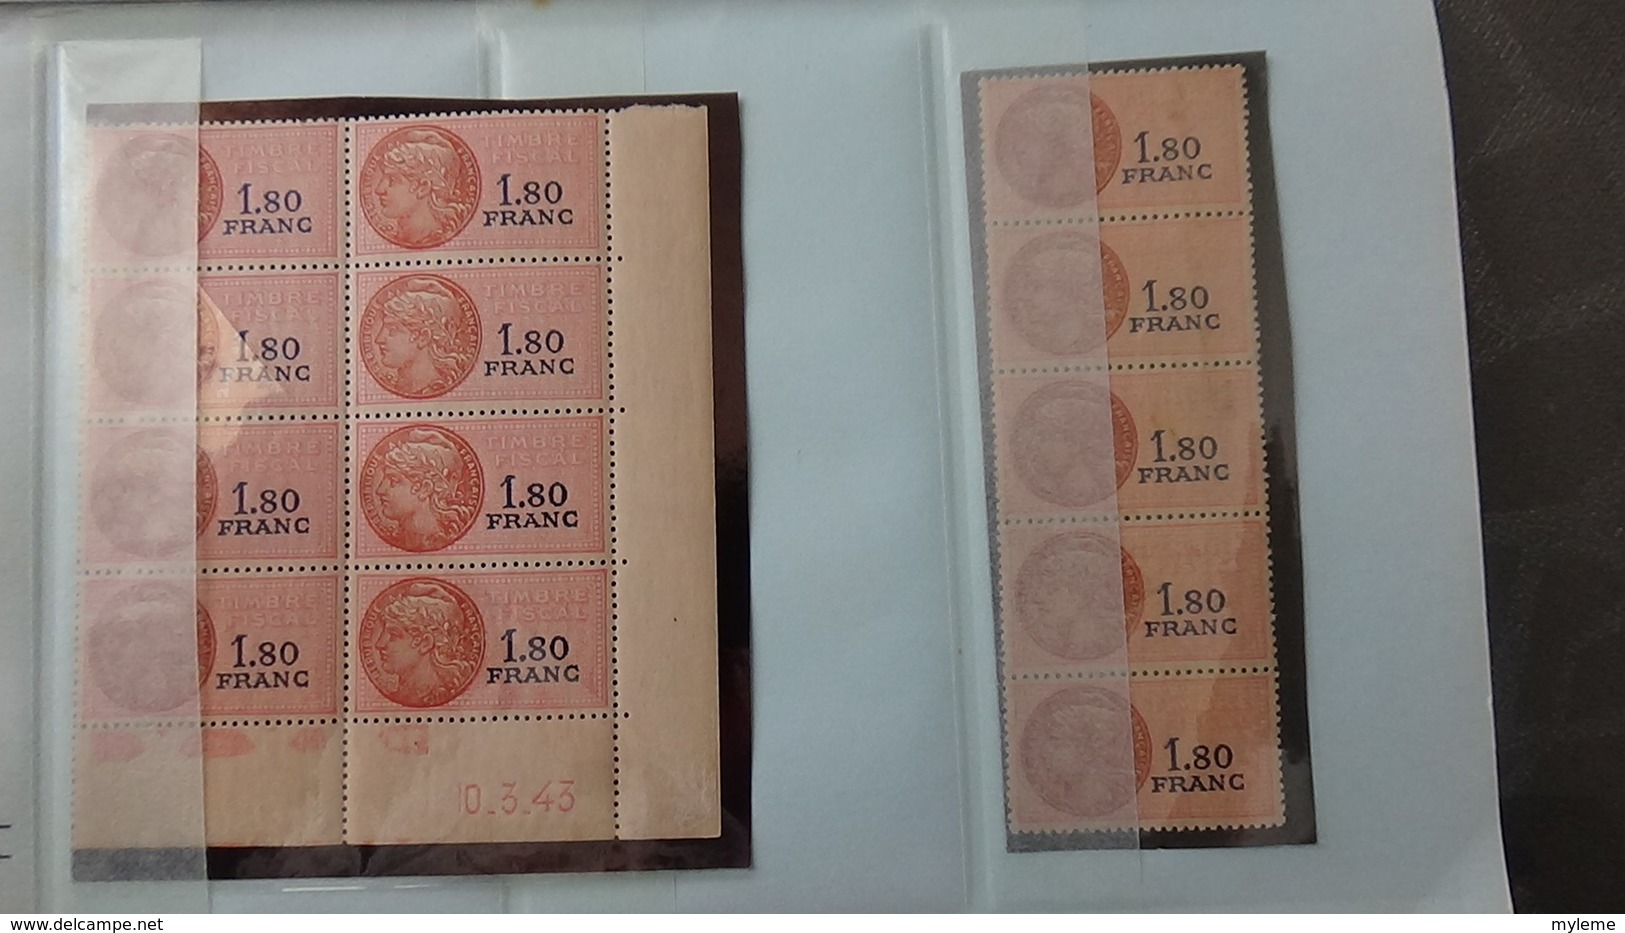 Carnet à choix de 230 timbres fiscaux avec coins datés (et date au verso) tous est **. Côte très sympa !!!